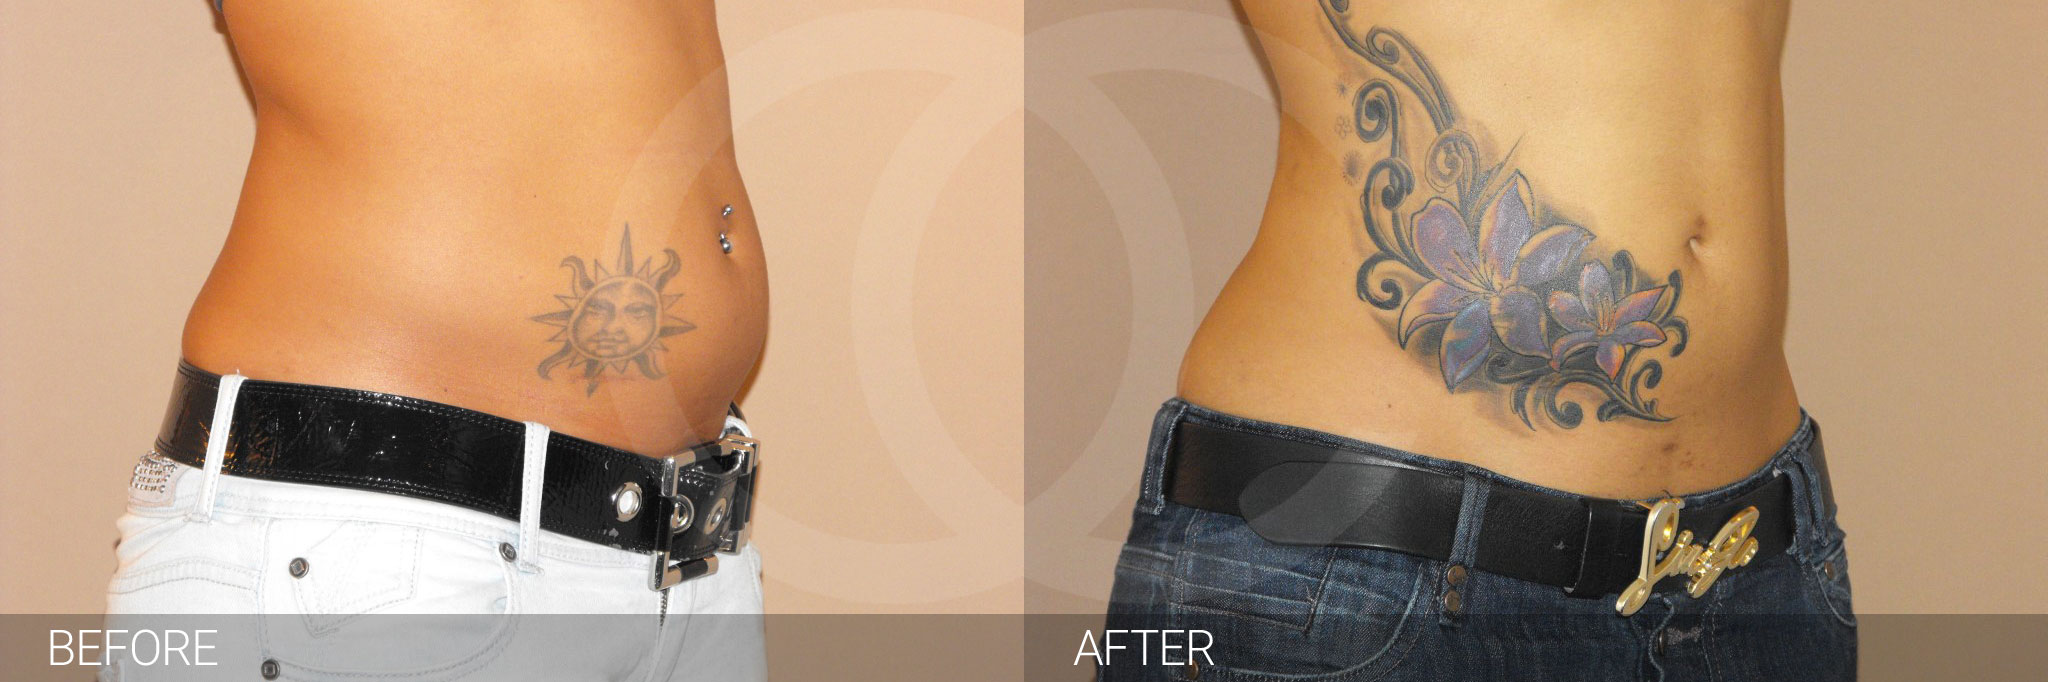 Antes y después Liposucción abdominal fotos reales de pacientes 2.2 | Ocean Clinic Marbella Madrid